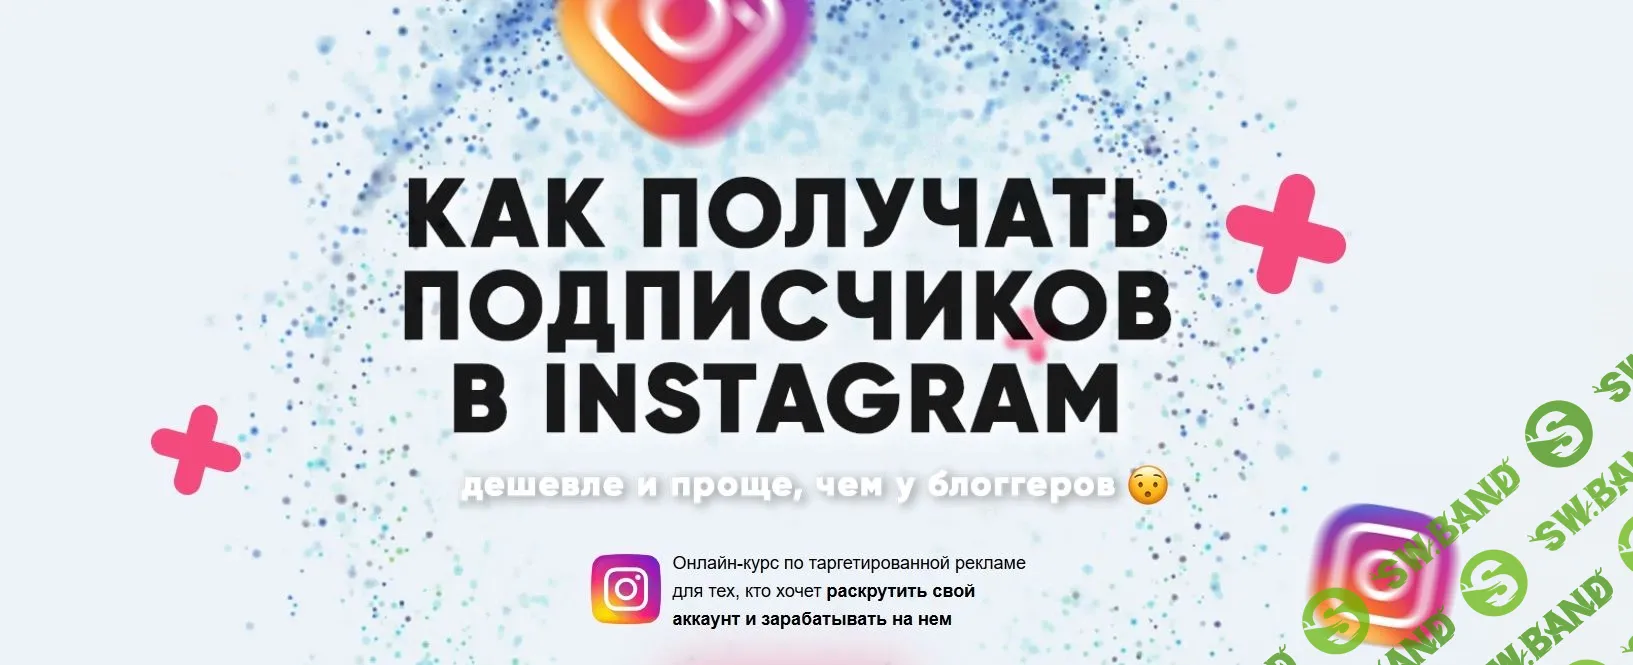 [Дмитрий Мамырин] Как получать подписчиков в Instagram (2019)